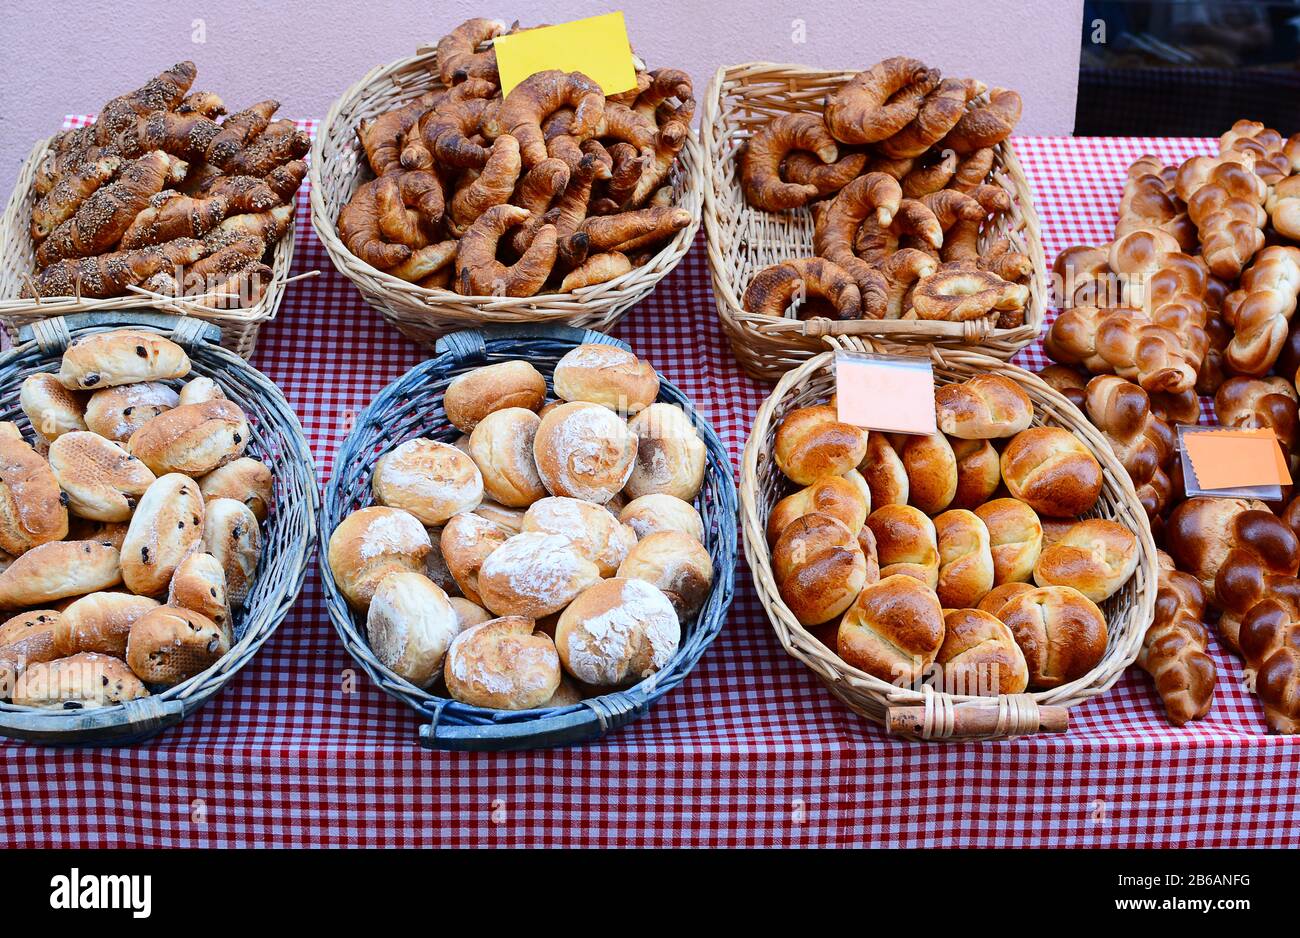 Vari tipi di pane e pasticcini in un mercato agricolo all'aperto in Svizzera. Foto Stock